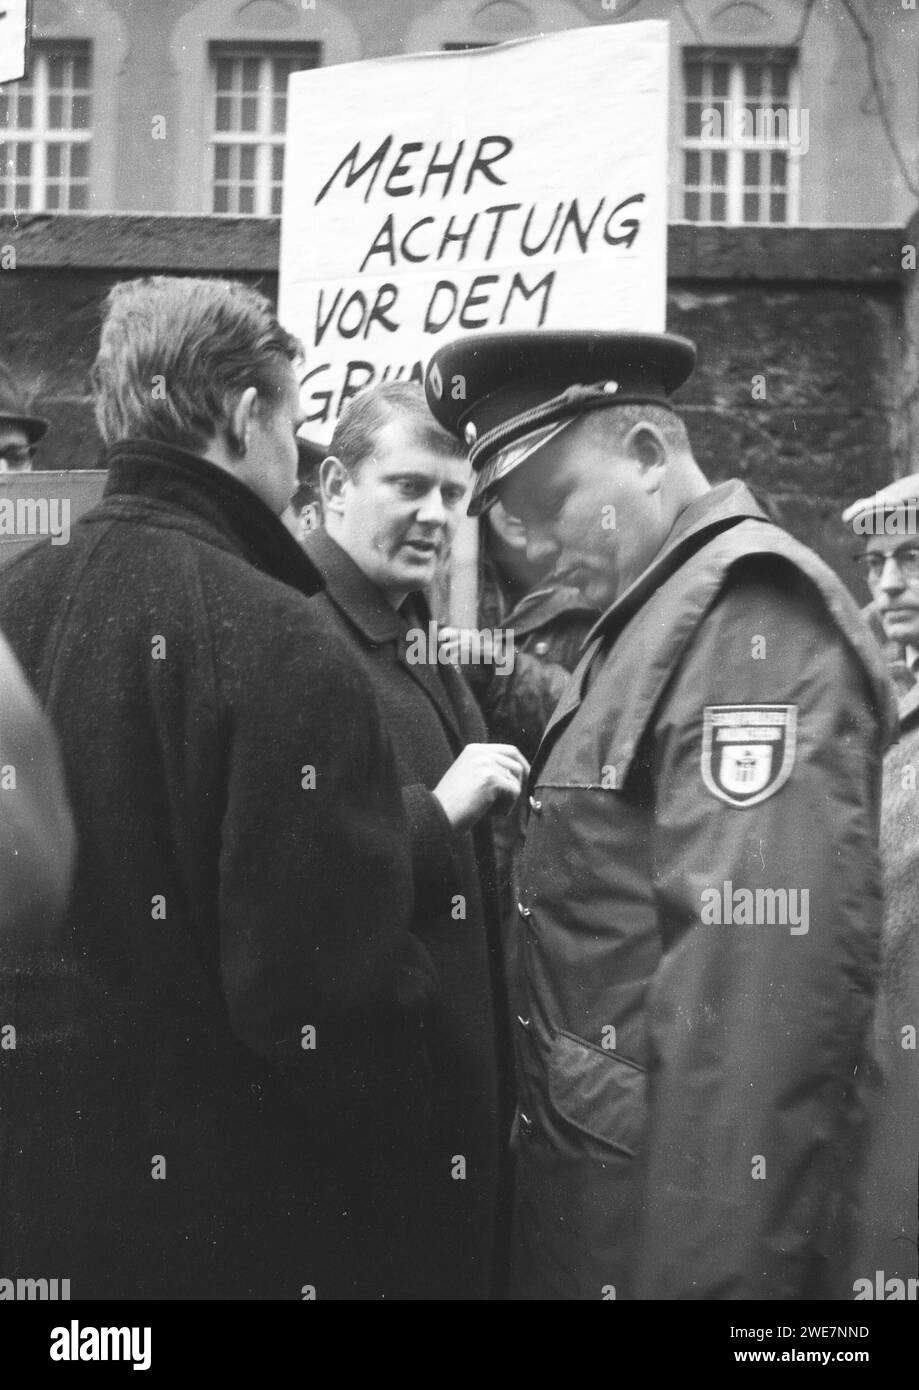 DEU, Deutschland, Dortmund: Persönlichkeiten aus Politik, Wirtschaft und Kultur aus den Jahren 1965-71. Politikwissenschaftler Andreas Buro, hier mit einem kleinen Stockfoto